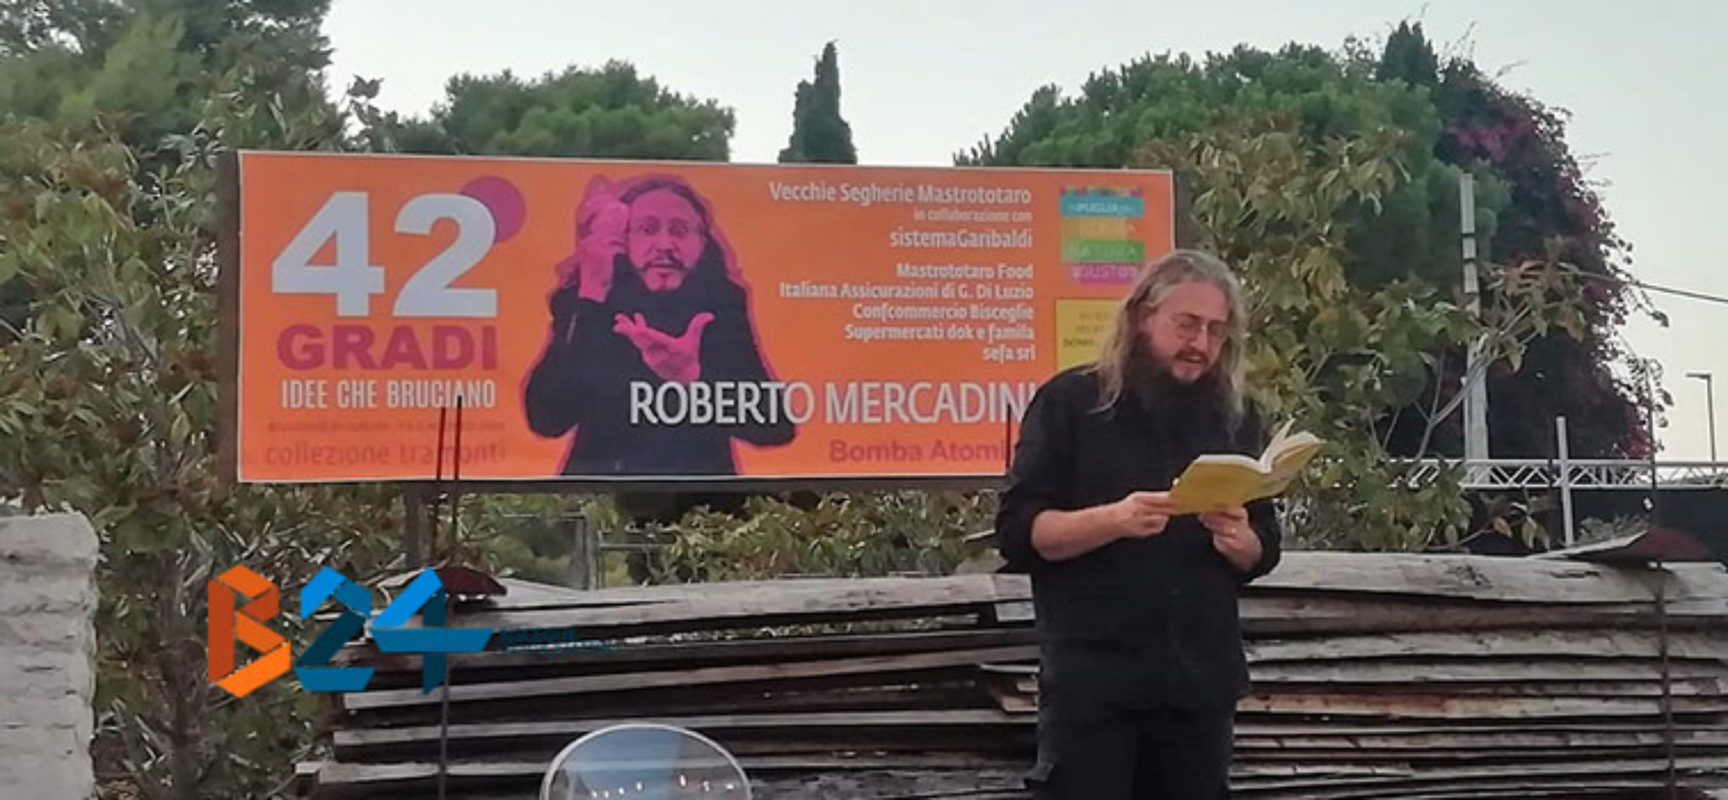 Roberto Mercadini apre la rassegna “42 gradi” con il suo “Bomba atomica”